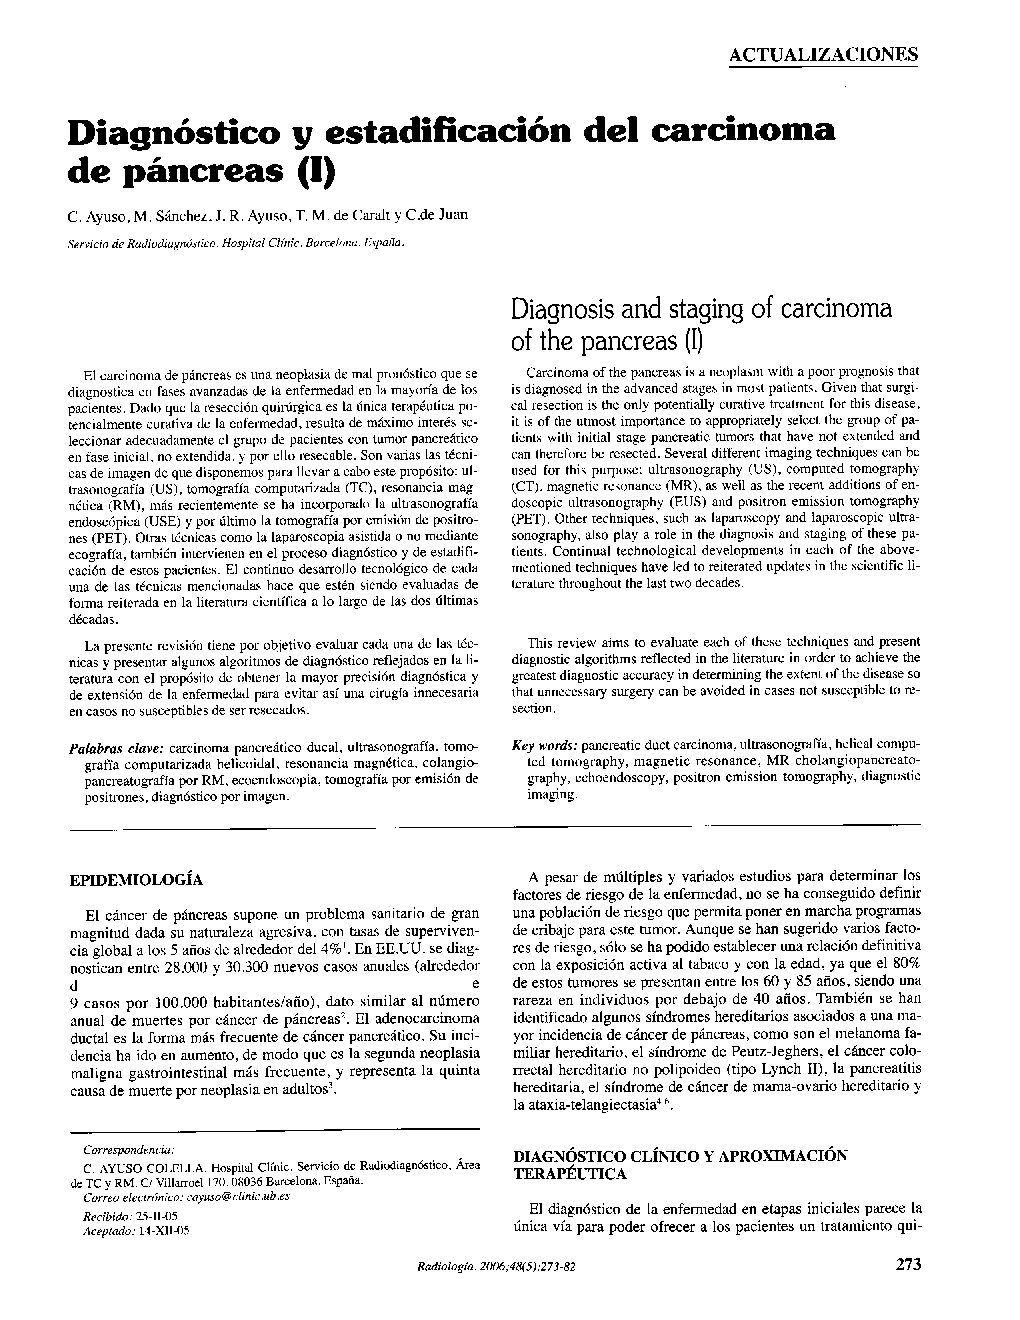 Diagnóstico y estadificación del carcinoma de páncreas (I)